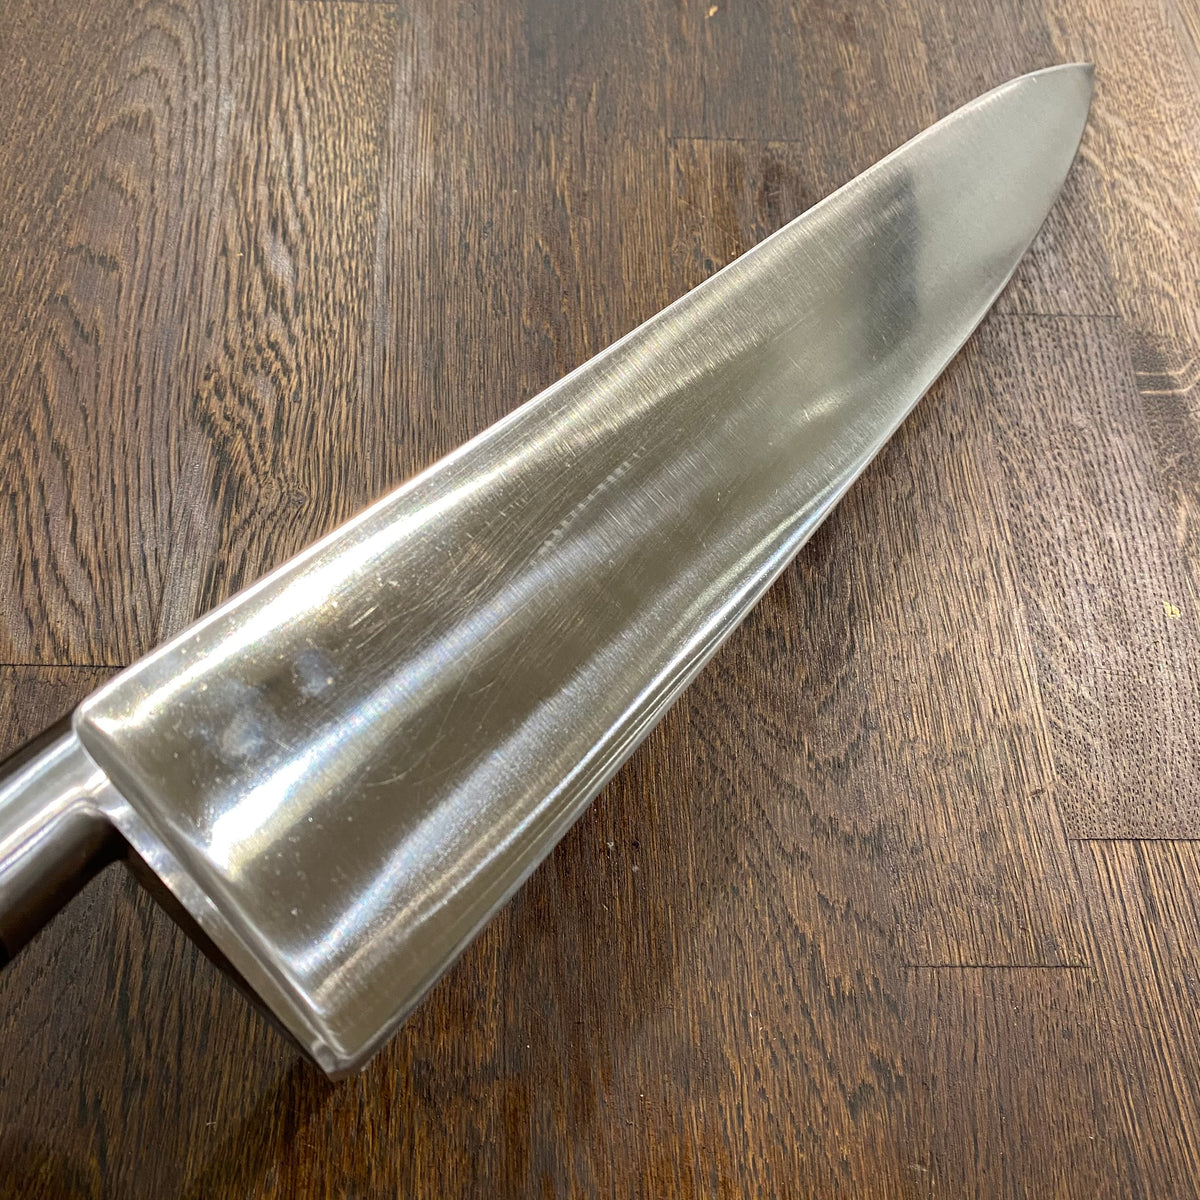 K Sabatier Jeune 14.25” Chef Knife Carbon Steel